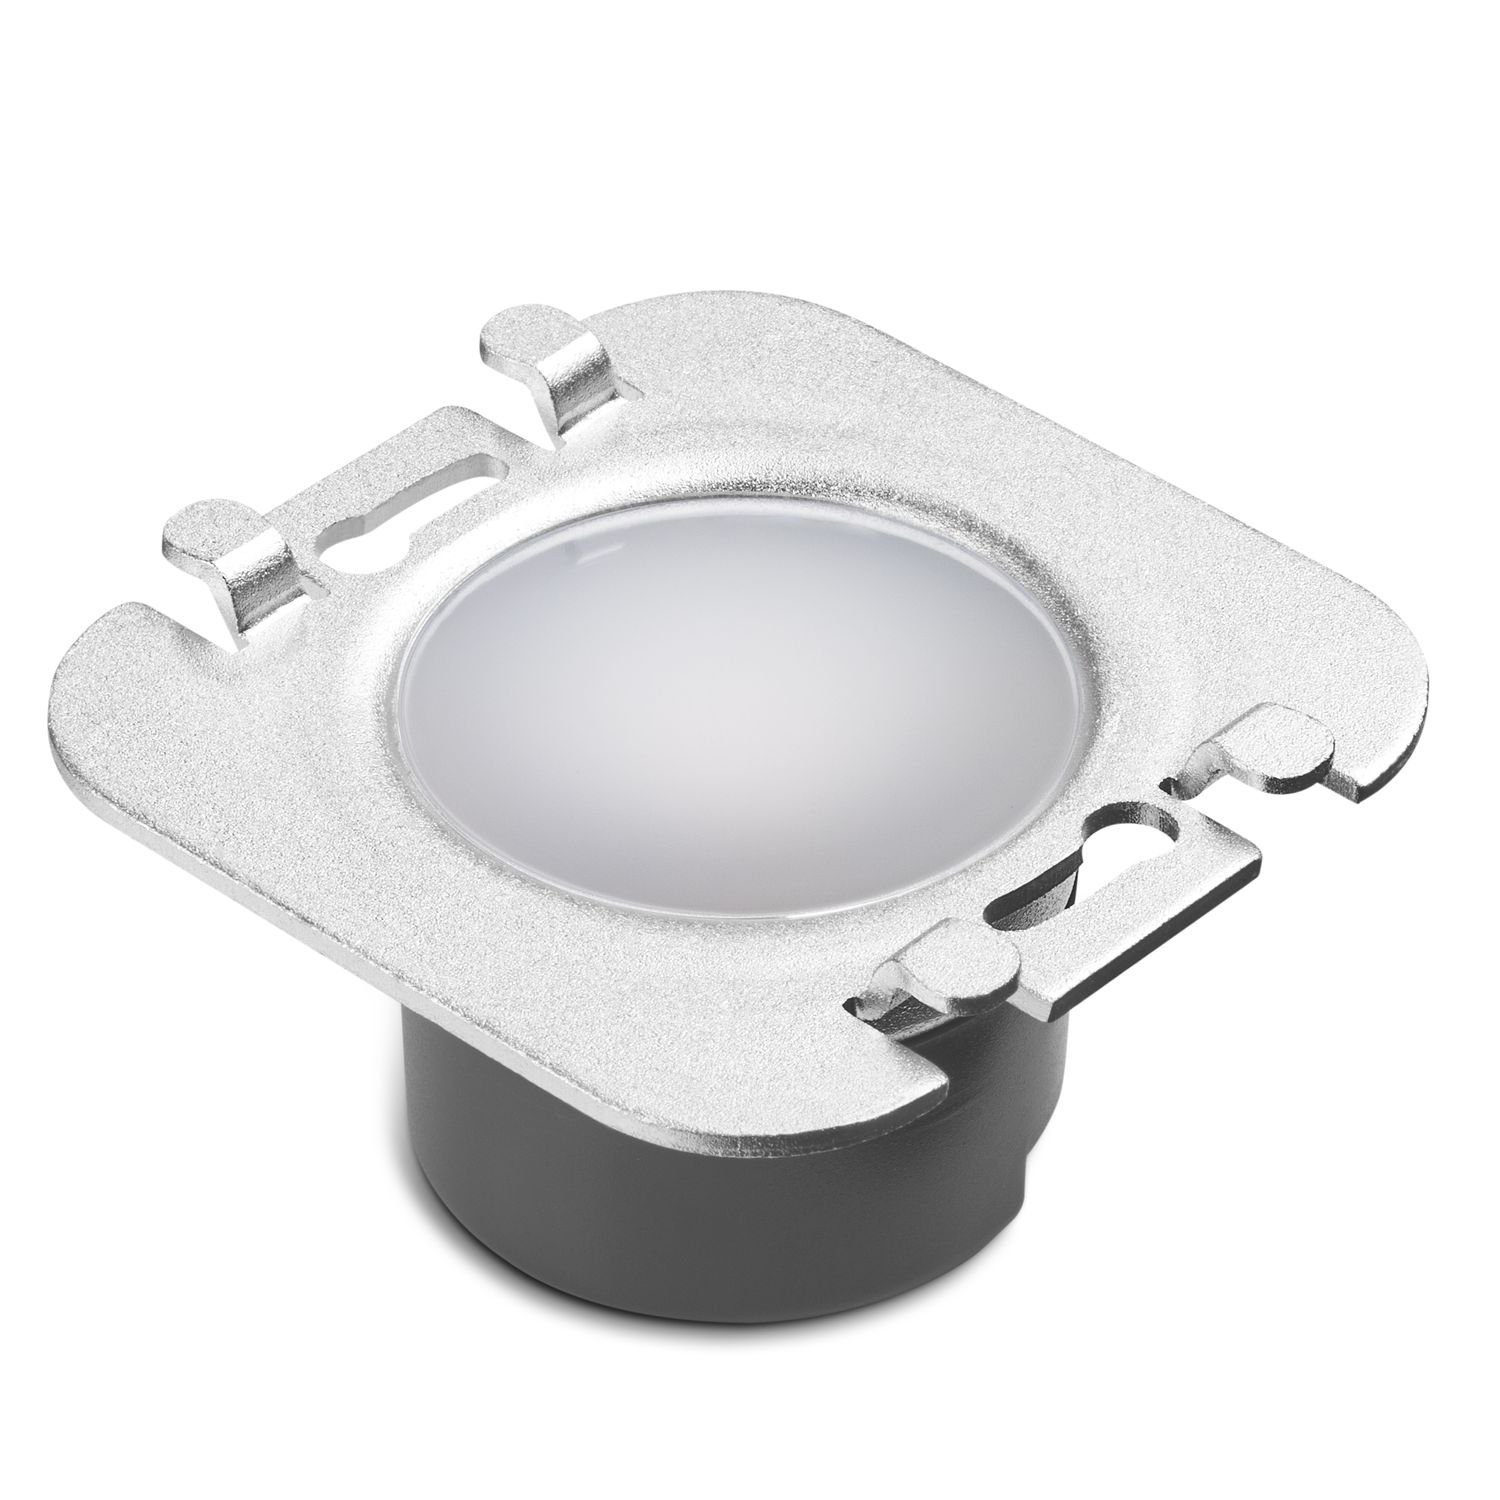 Einbaustrahler für Treppenbeleuchtung LED LED Wifi / STRIPE in LEDANDO eckig weiß weiss Schalterd